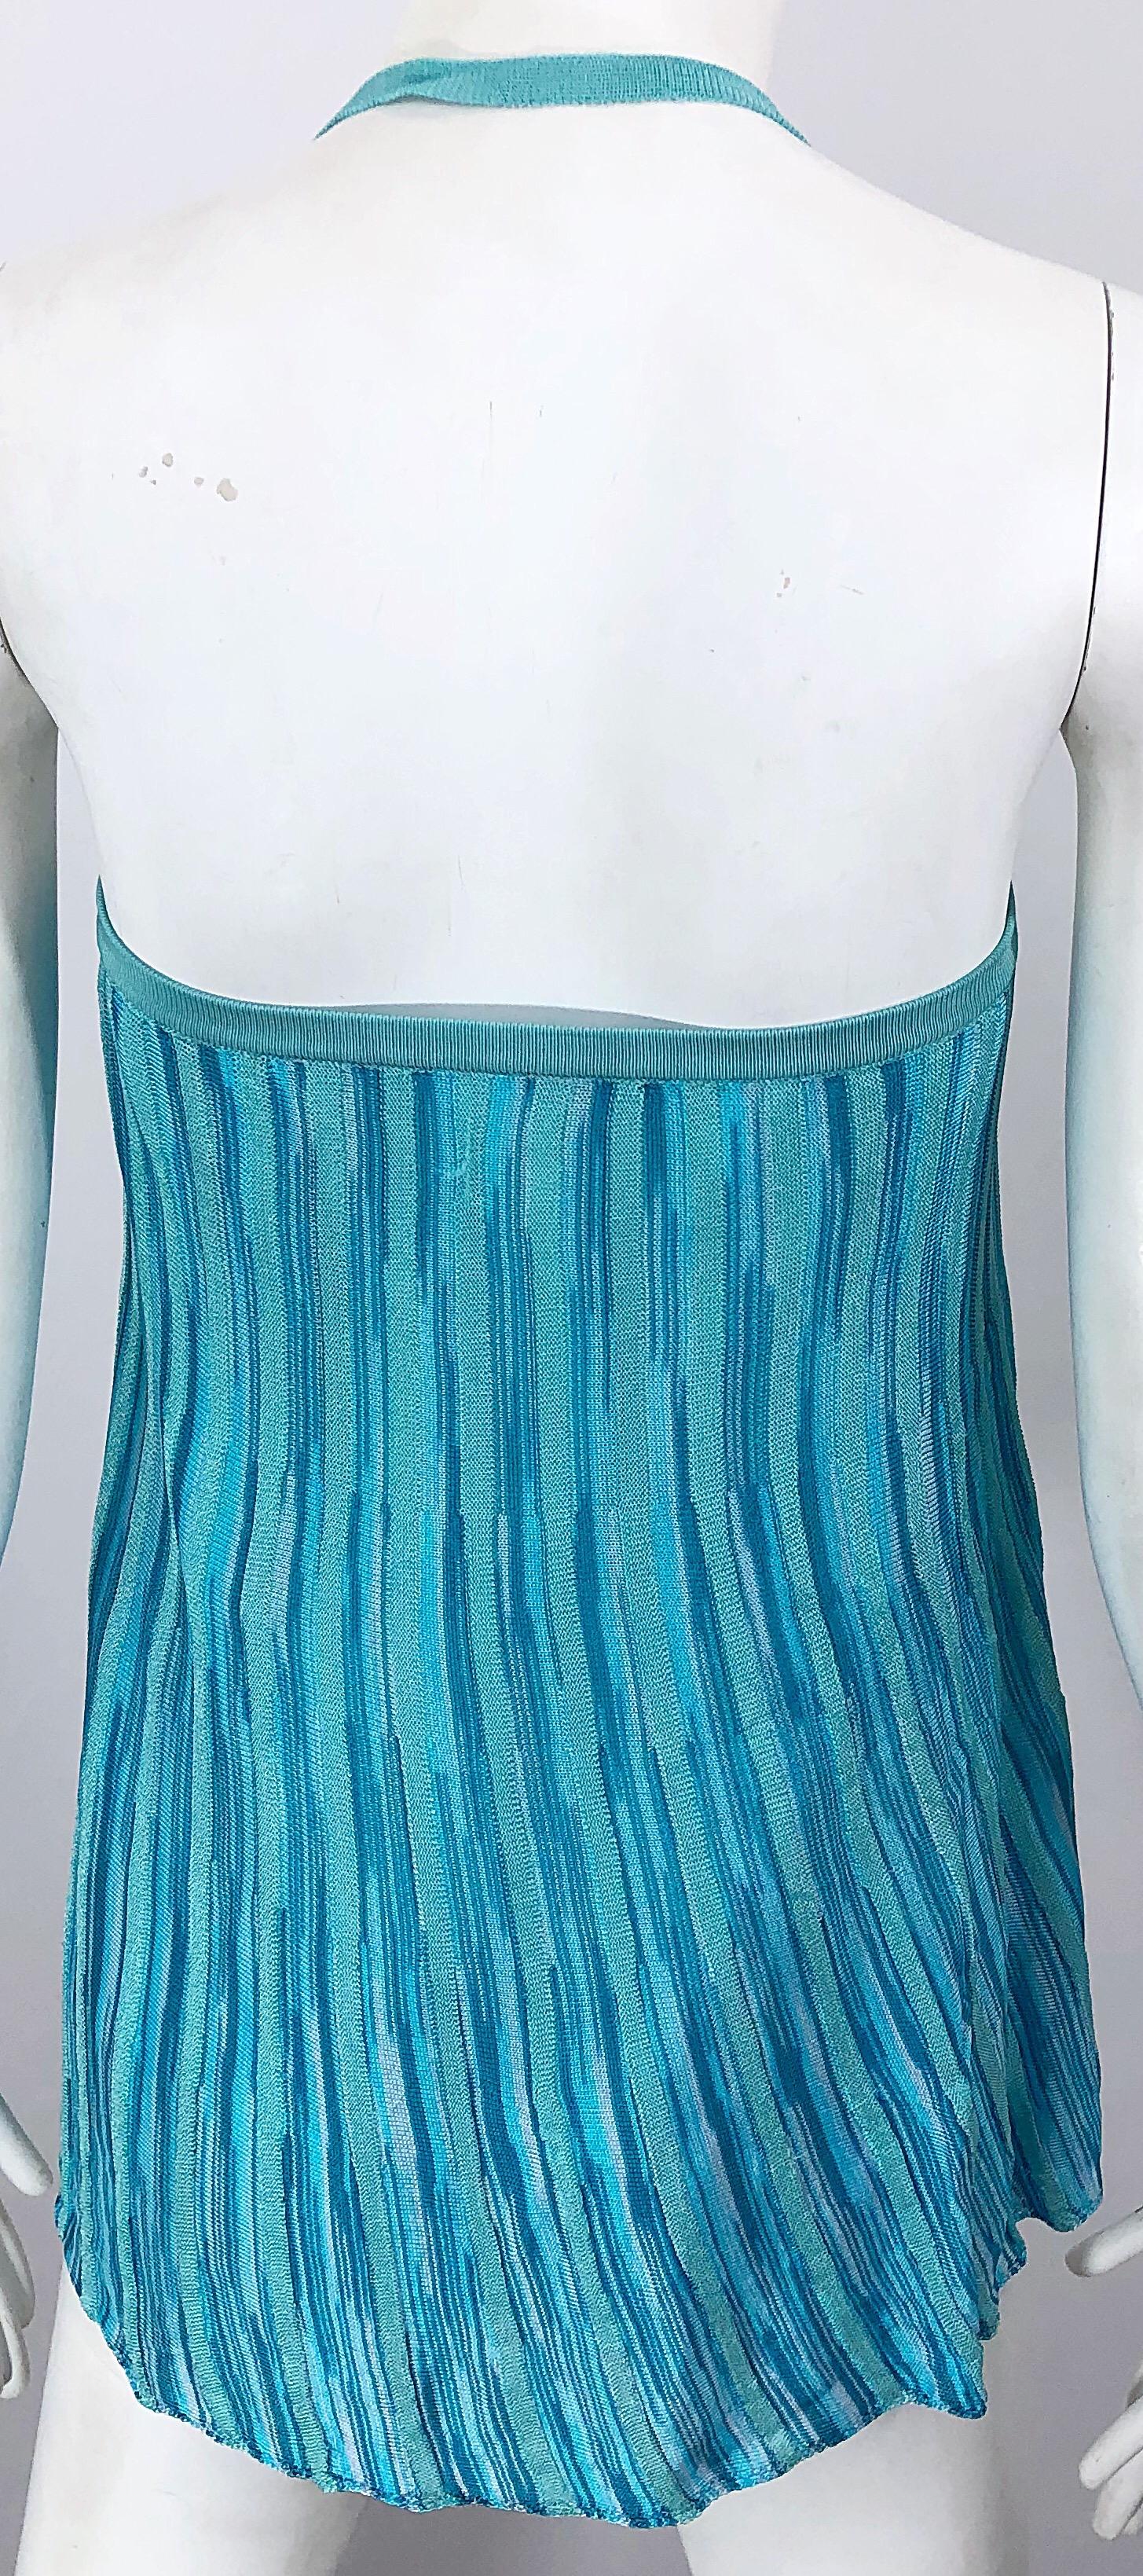 Vintage Missoni 1990s Turquoise Teal Blue Knit Vintage 90s Halter Top OR Skirt For Sale 1